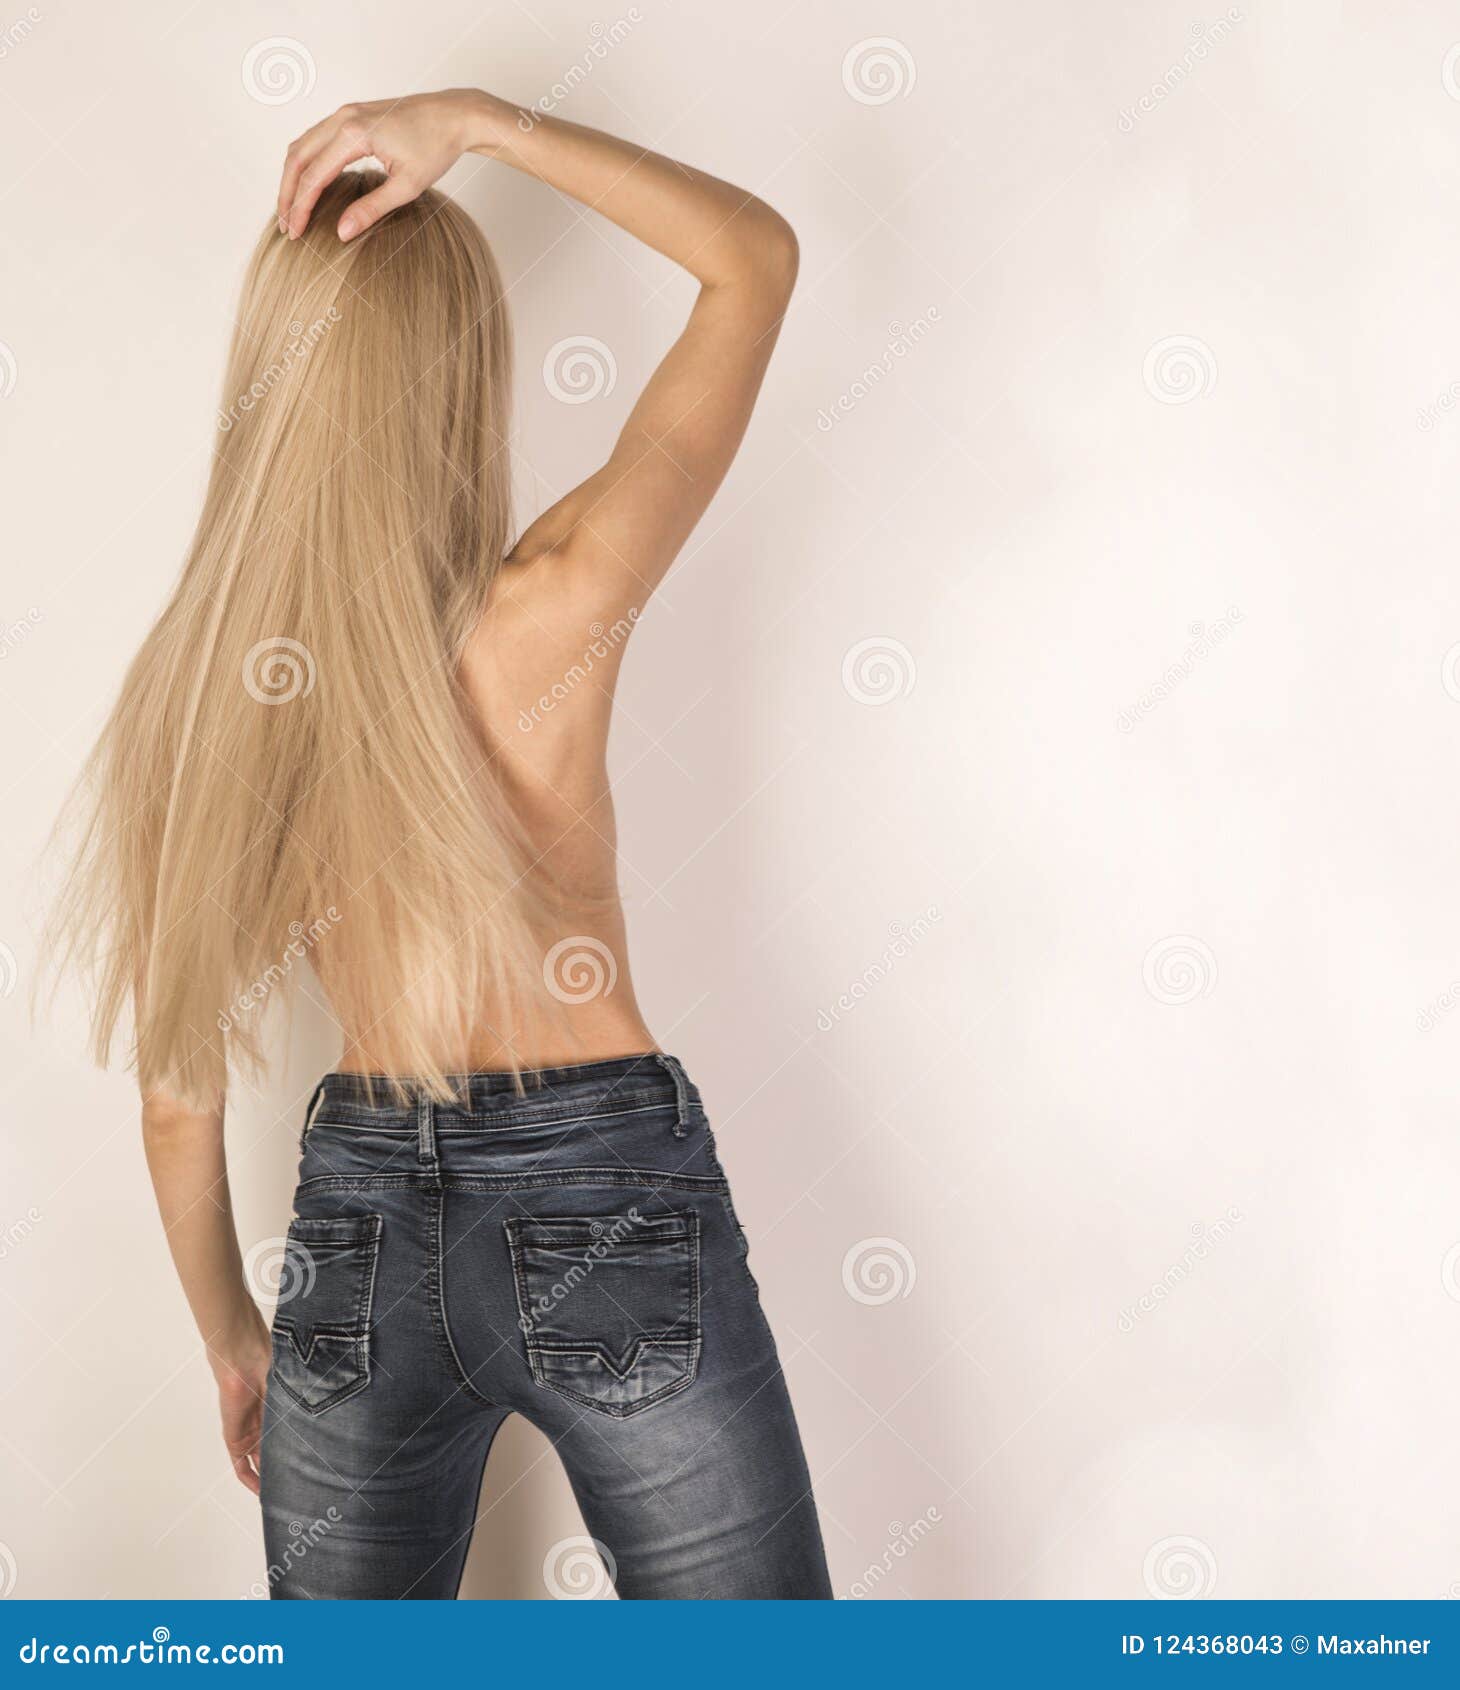 Skinny long blonde hair